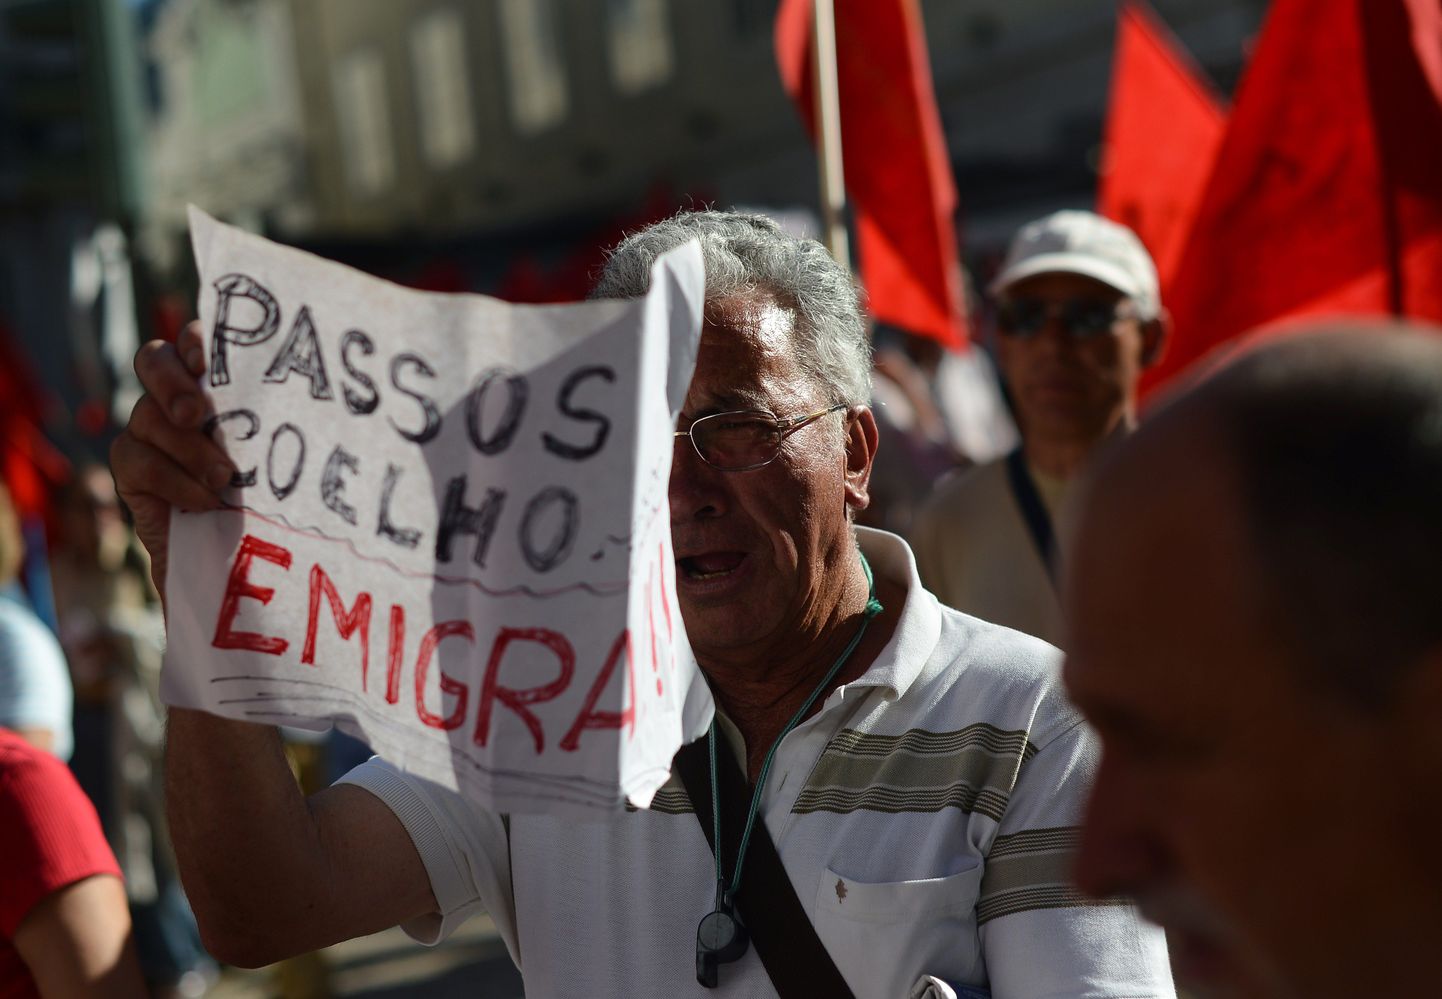 «Passos Coelho, emigreeru!» kuulutab Portugali kommunistliku partei meeleavaldusel osalev mees peaministrile.